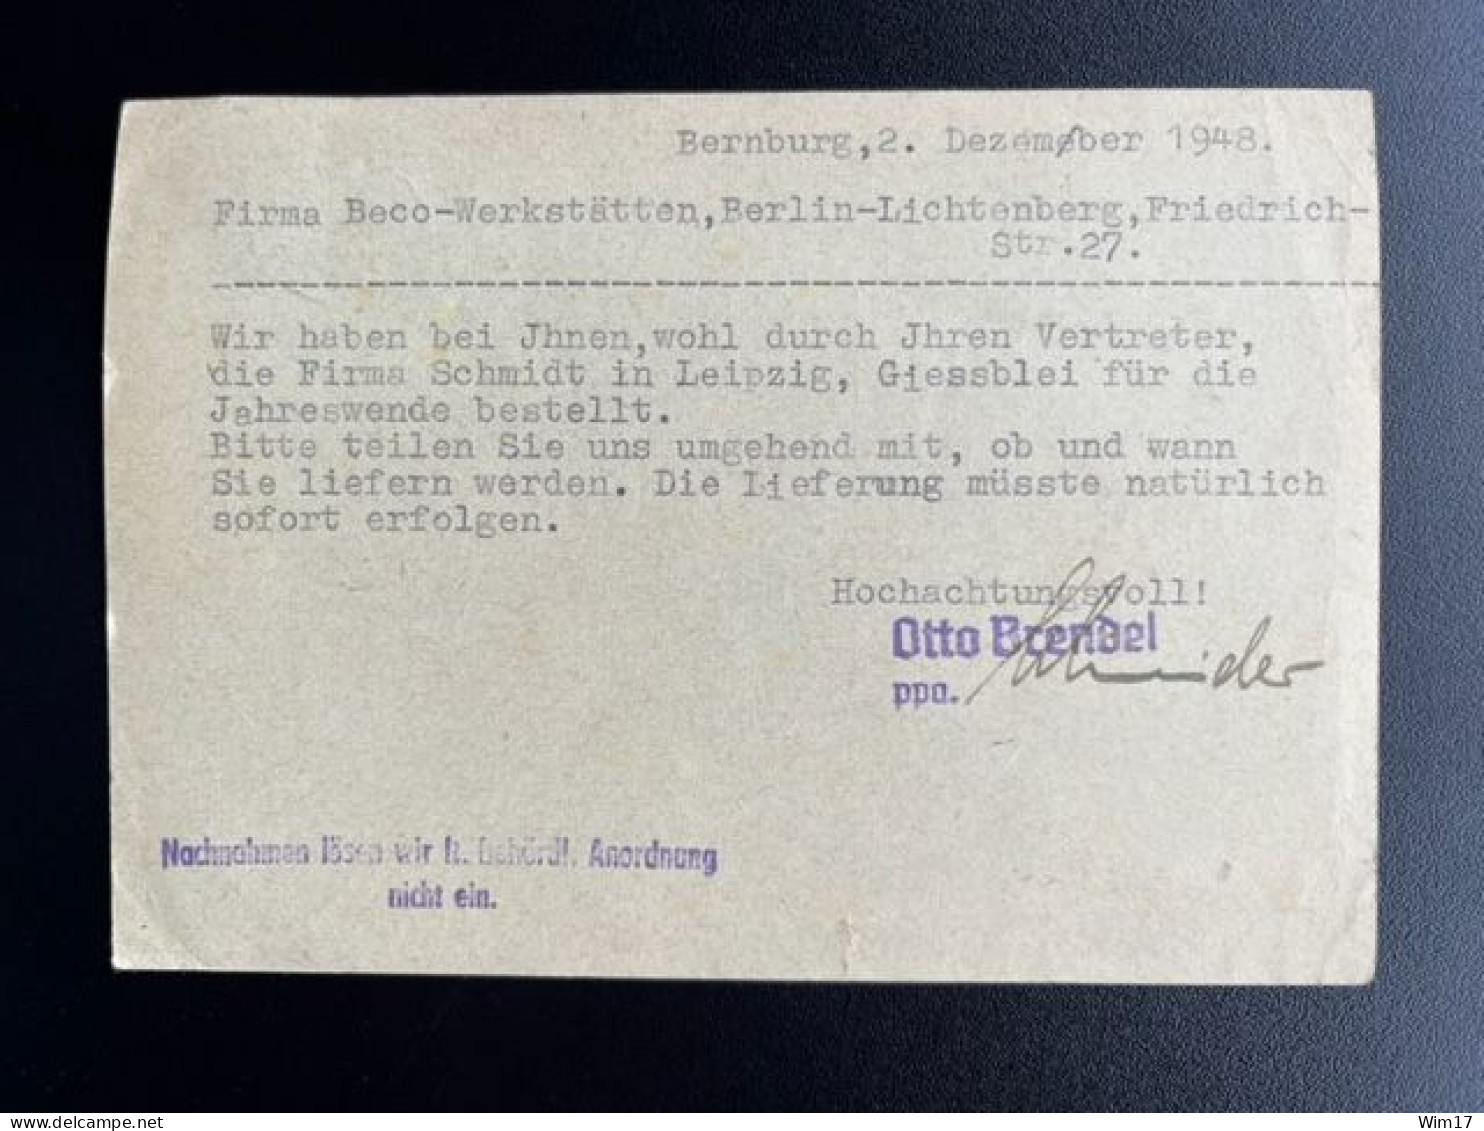 GERMANY 1948 POSTCARD BERNBURG TO BERLIN LICHTENBERG 03-12-1948 DUITSLAND DEUTSCHLAND - Entiers Postaux